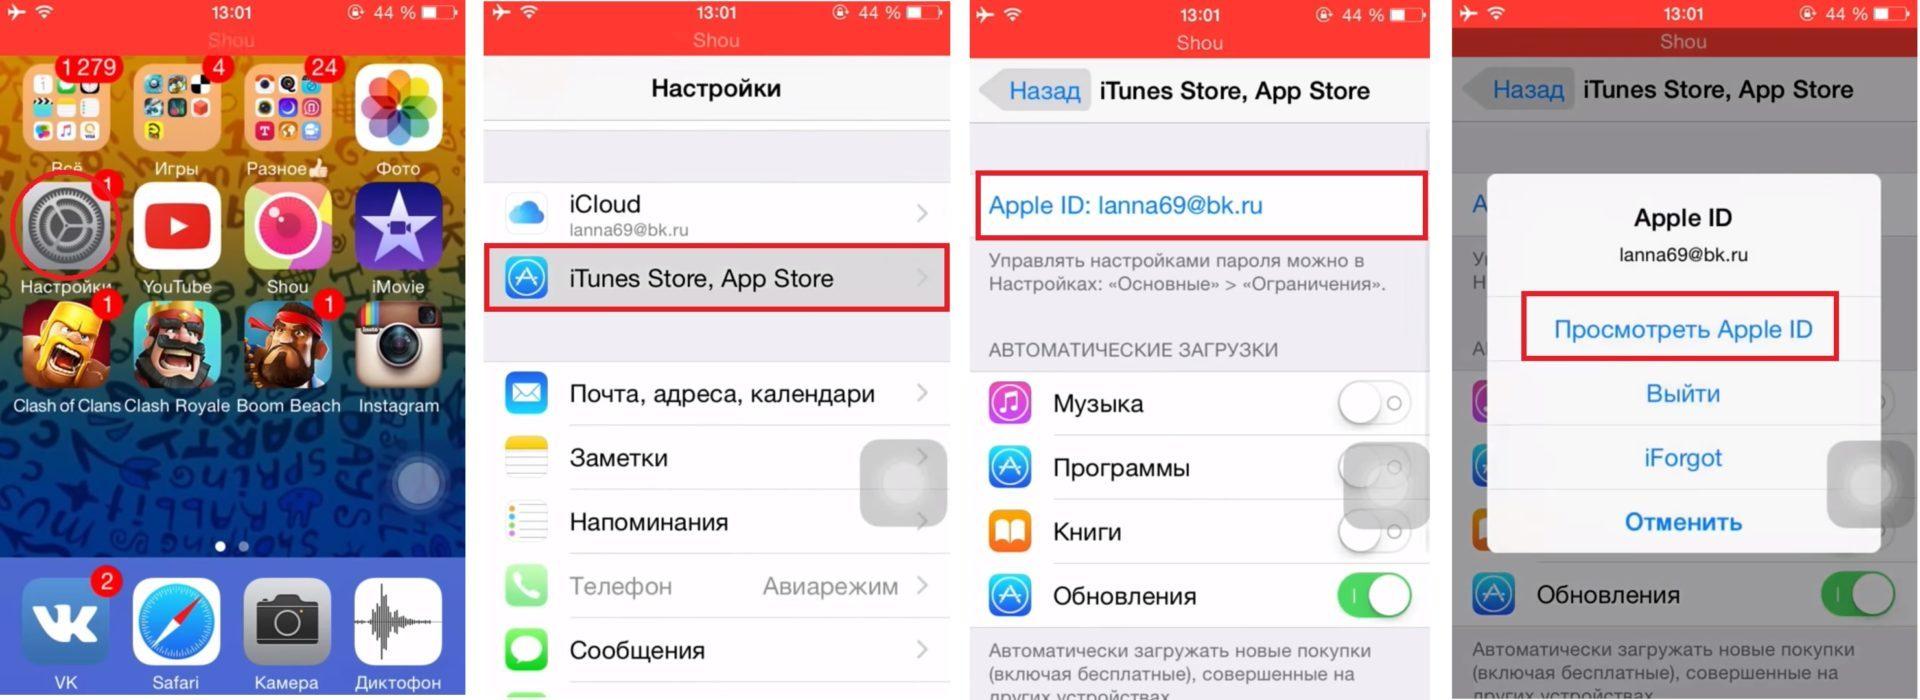 Как поменять язык в телеграмме с английского на русский андроиде фото 104